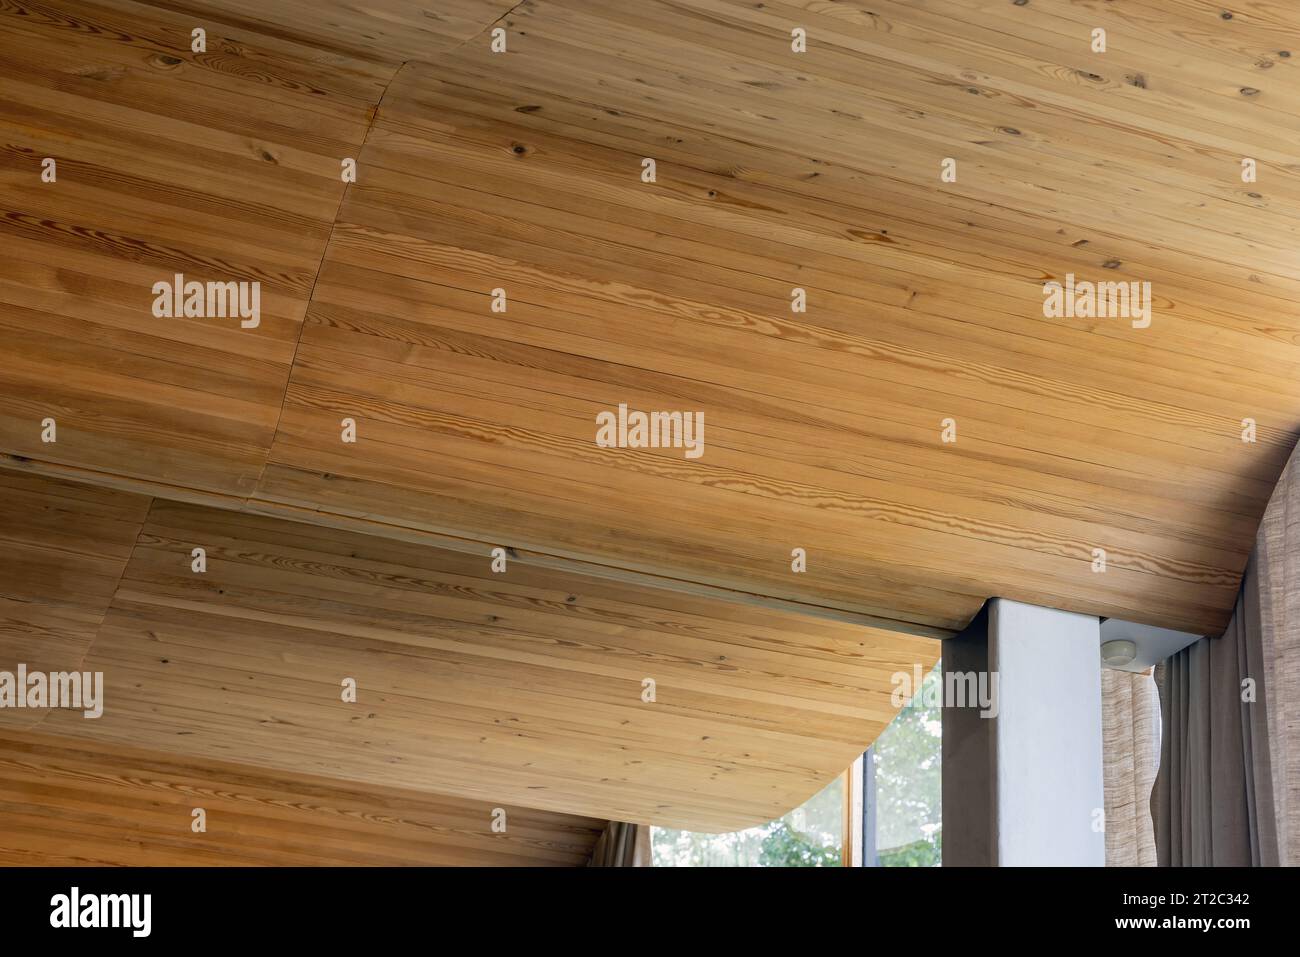 Plafond plié en planches de bois, photo de fond d'architecture paramétrique Banque D'Images